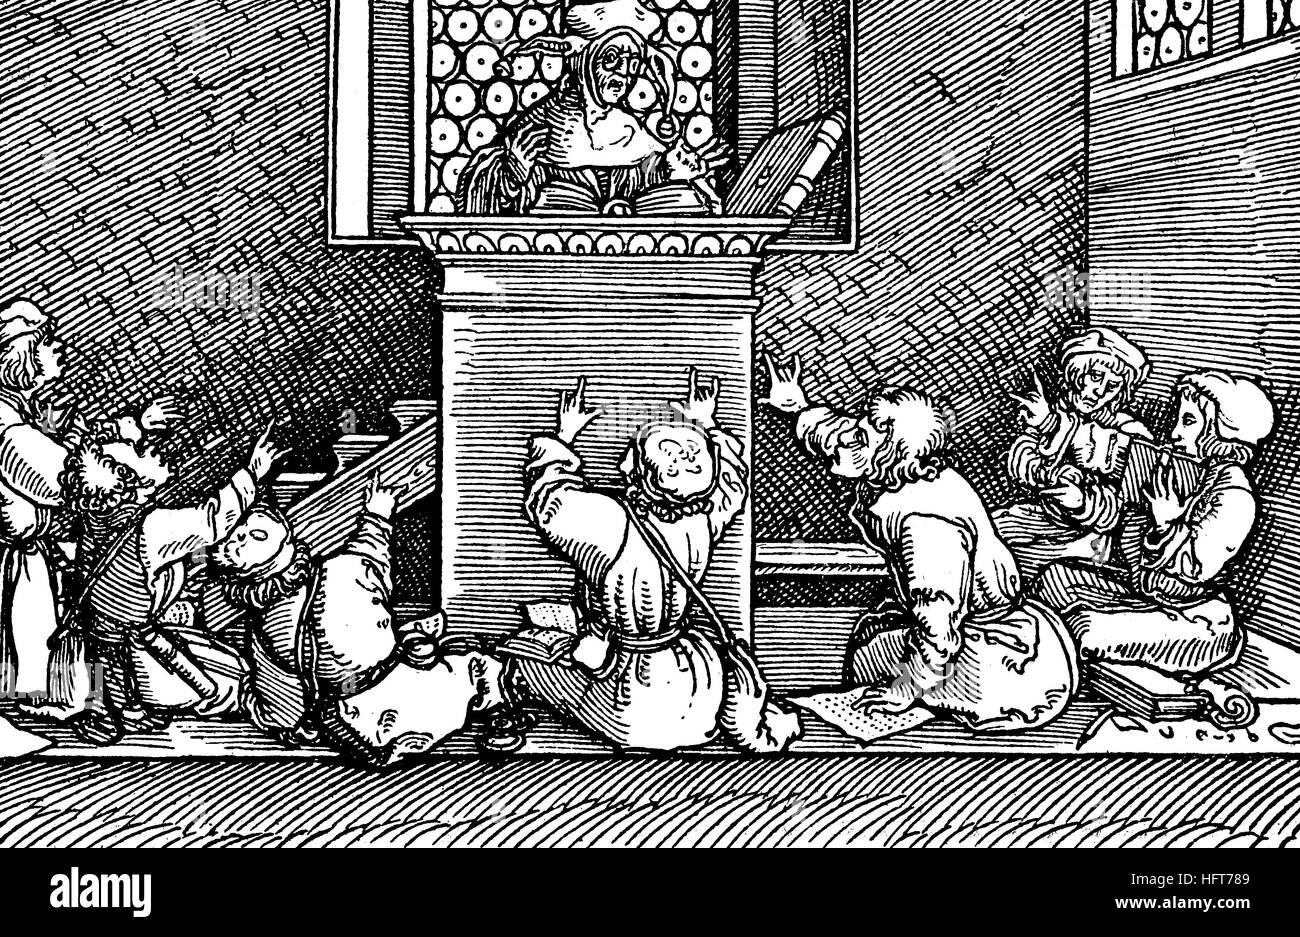 Dans une salle de classe au 16e siècle, de la gravure sur bois, images zu Schimpf und Ernst, par Hans Burgkmair, 1472-1559, l'Allemagne, gravure sur bois de l'année 1885, l'amélioration numérique Banque D'Images